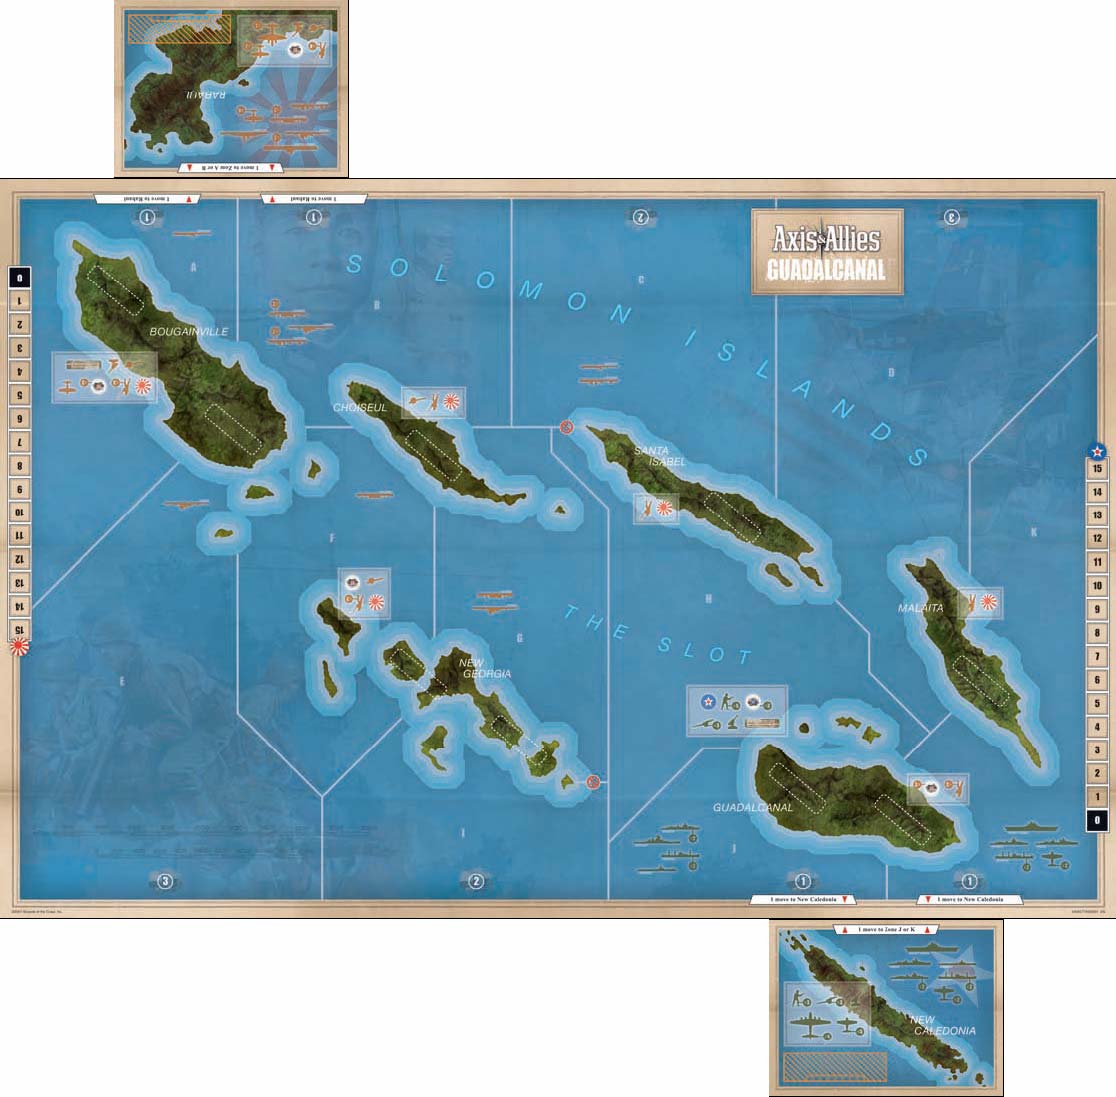 Podrobný popis herních komponent Hrací plán Hlavní hrací plán představuje mapu Šalamounových ostrovů v Jižním Pacifiku.